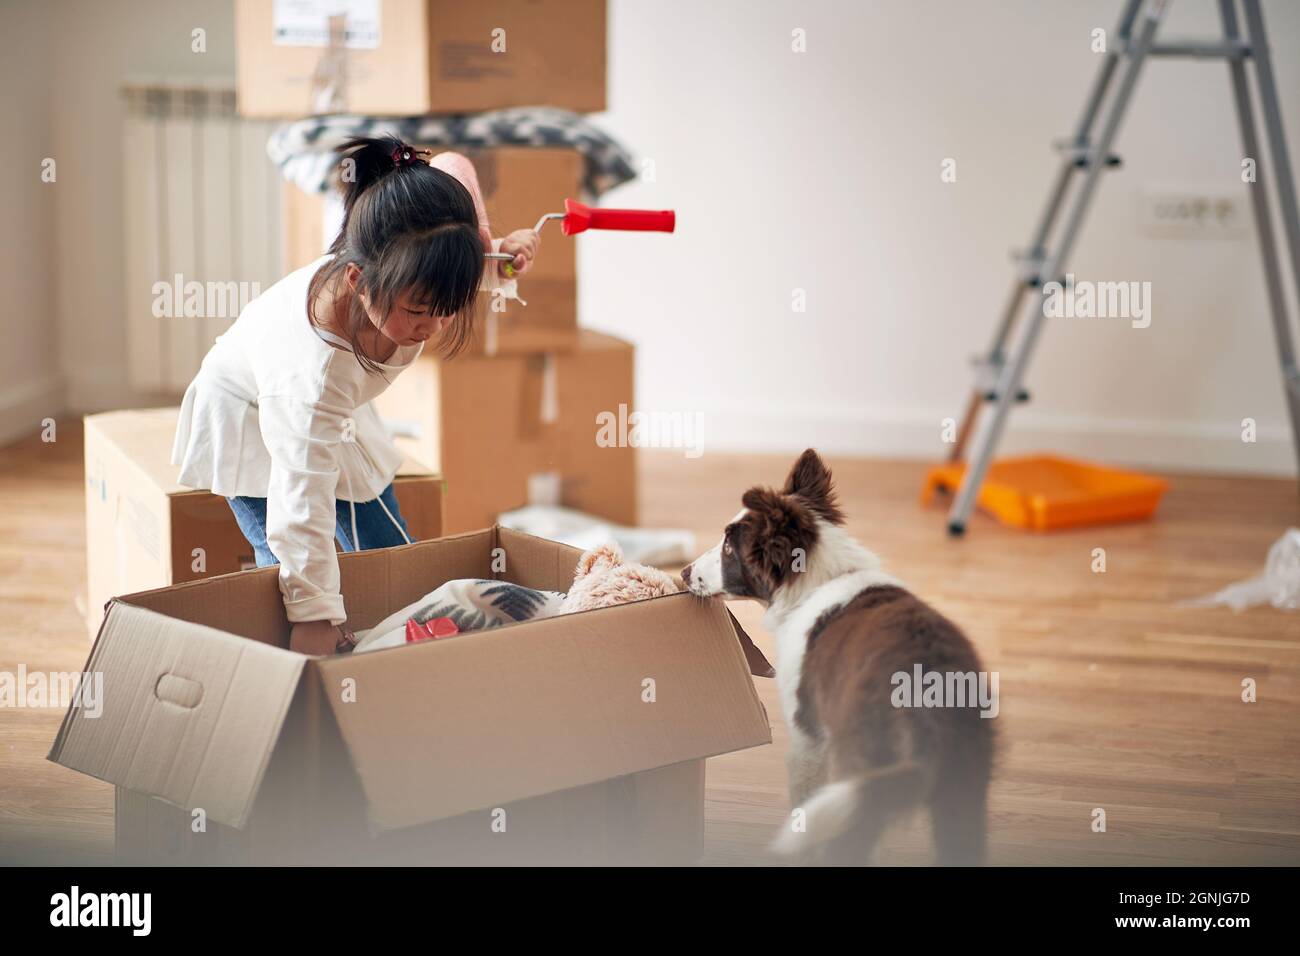 Ein kleines Mädchen mit Hund packt die Sachen in einer angenehmen Atmosphäre in dem neuen Zuhause aus, in dem ihre Familie gerade eingezogen ist. Zuhause, Familie, Umzug Stockfoto